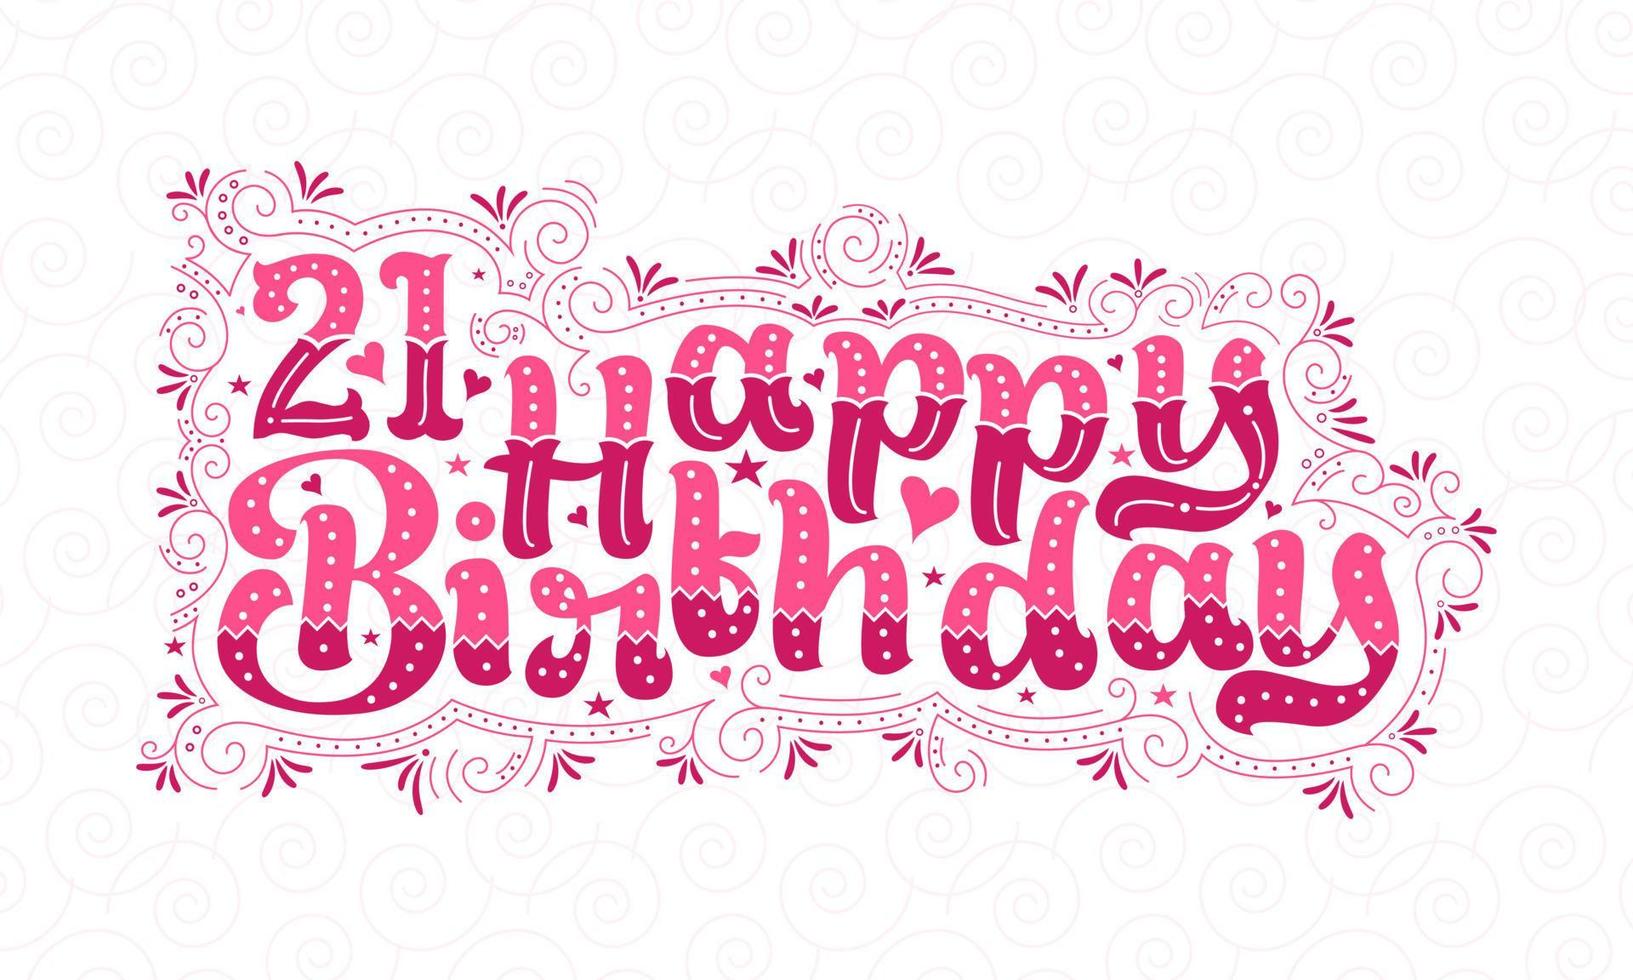 21:a grattis på födelsedagen bokstäver, 21 års födelsedag vacker typografidesign med rosa prickar, linjer och löv. vektor